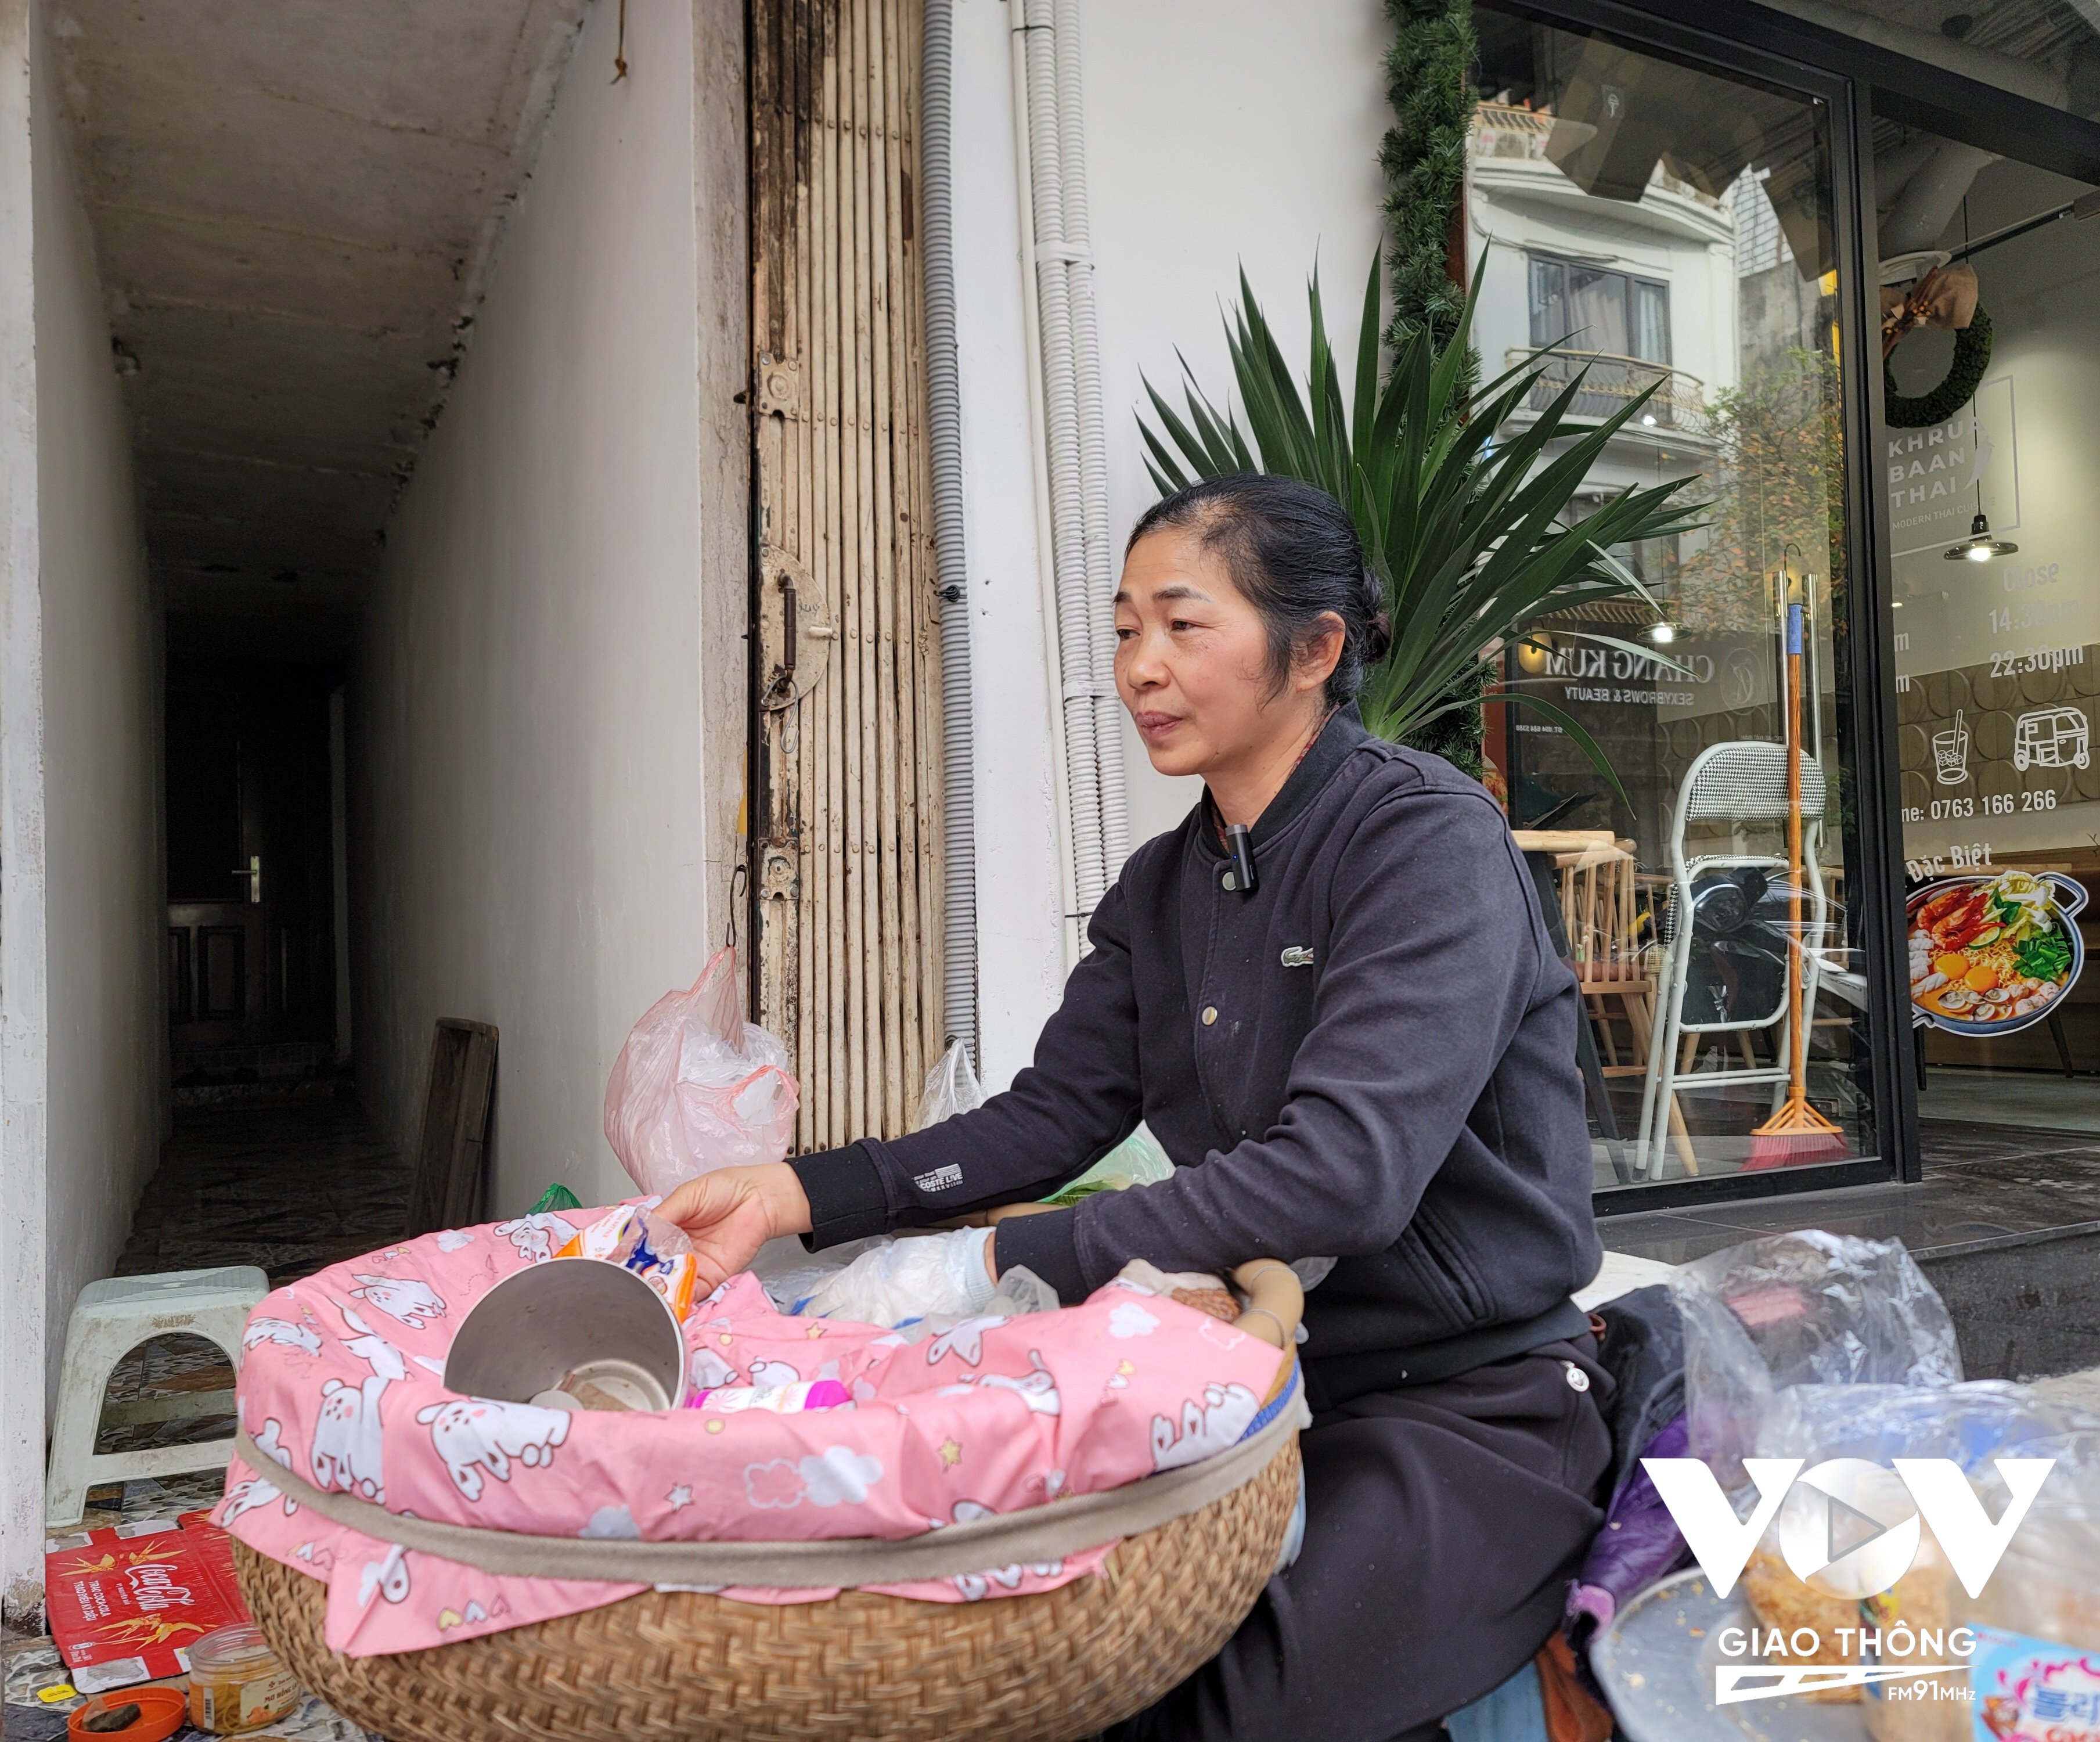 Nghệ nhân Nguyễn Thị Tuyến bán hàng tại con ngõ nhỏ trên phố Bát Đàn